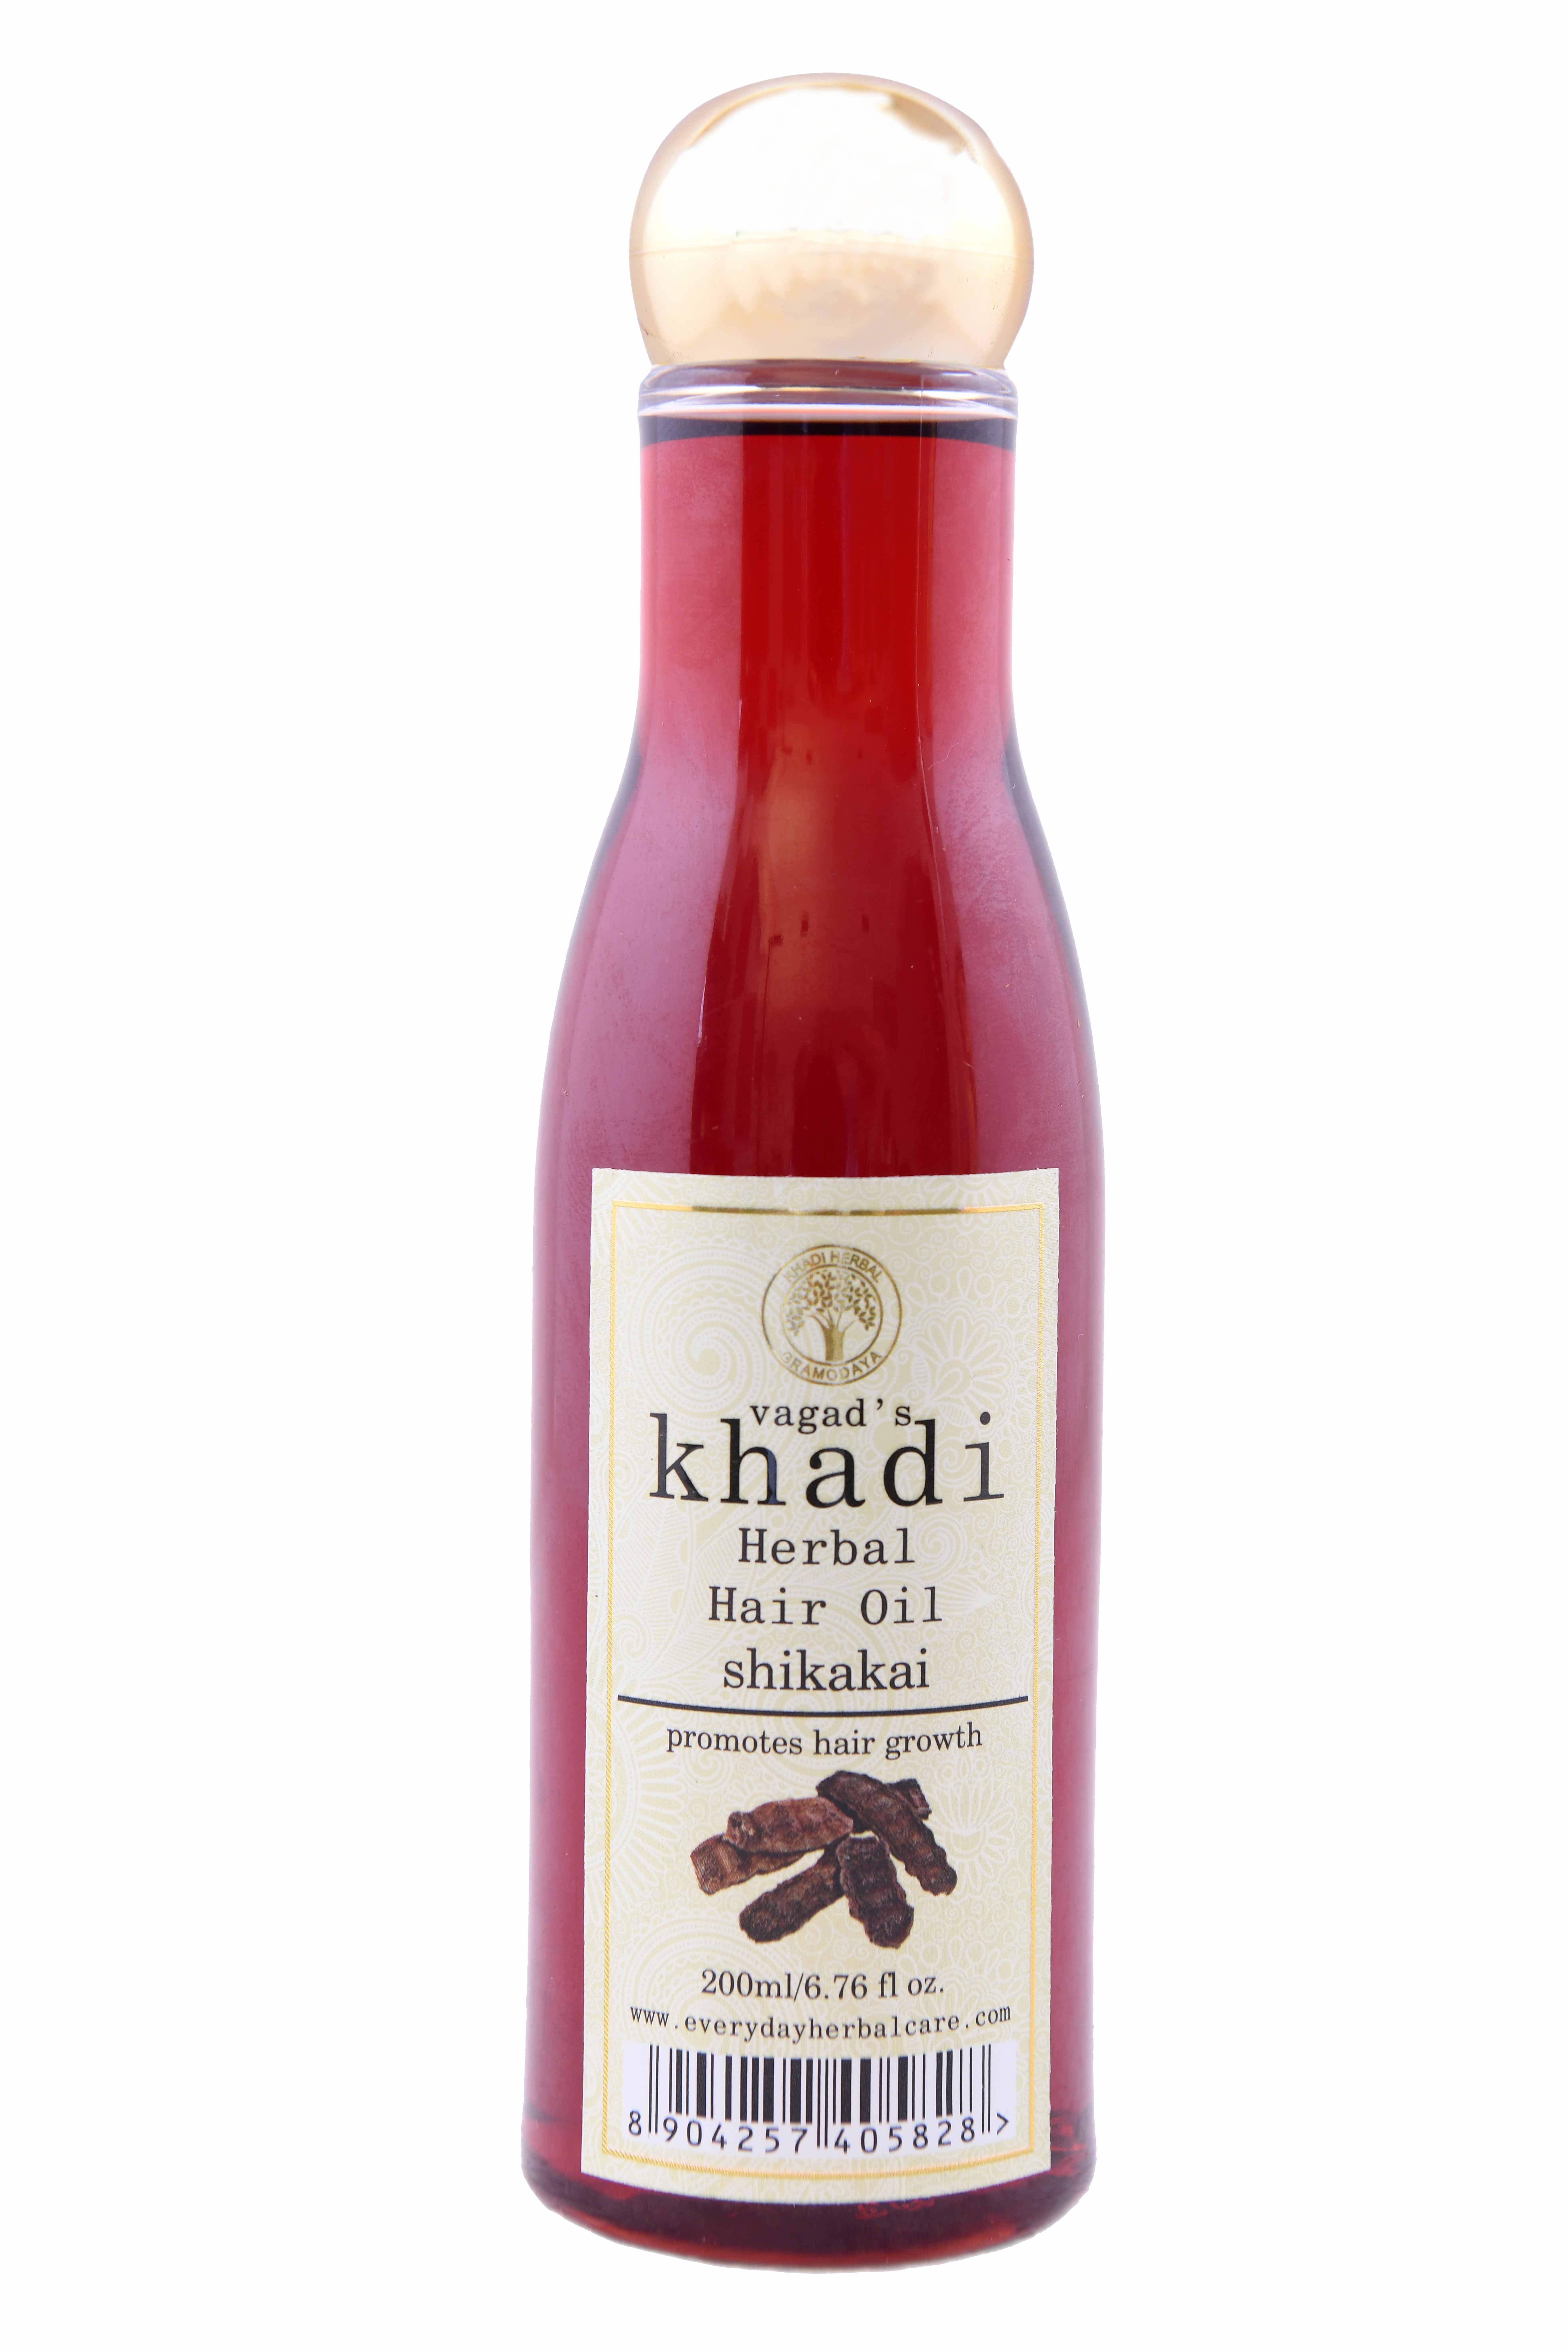 Buy Vagad's Khadi Shikakai Hair Oil at Best Price Online